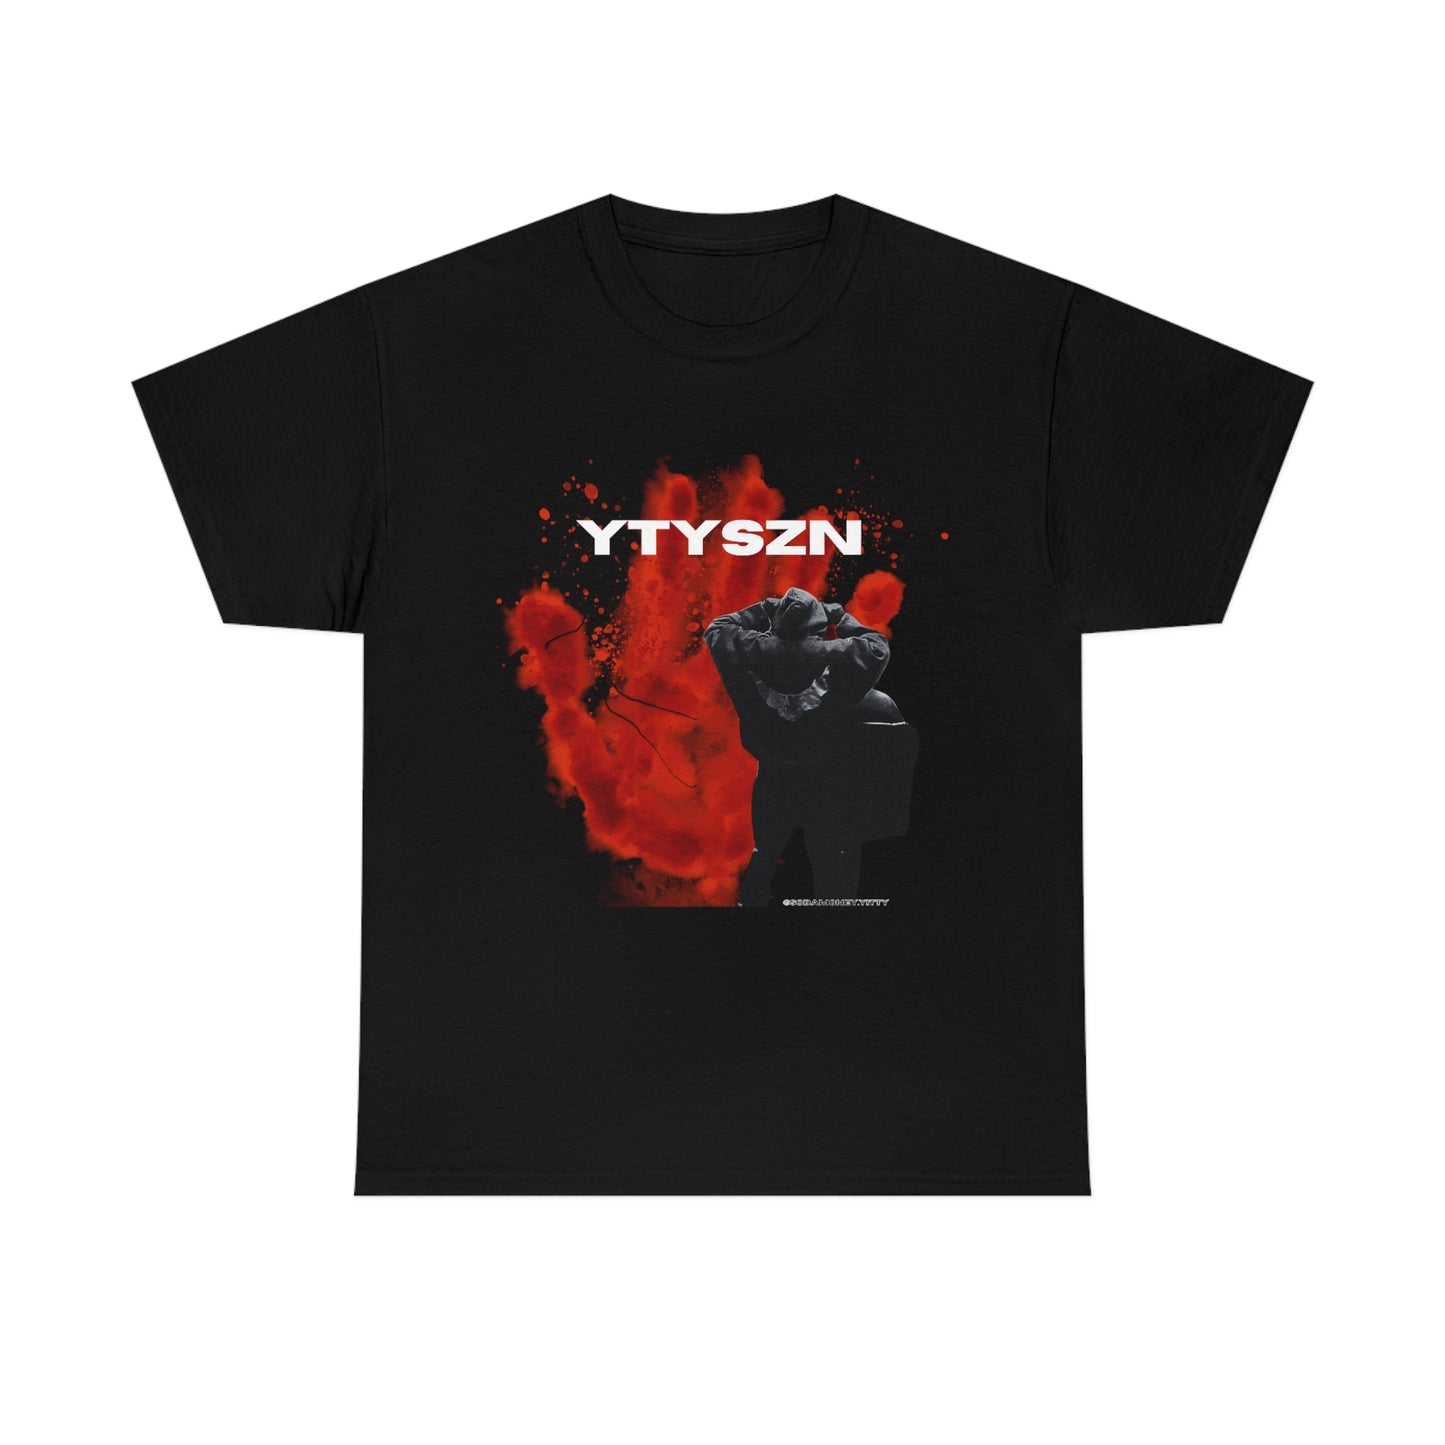 YTYSZN3 T-SHIRT